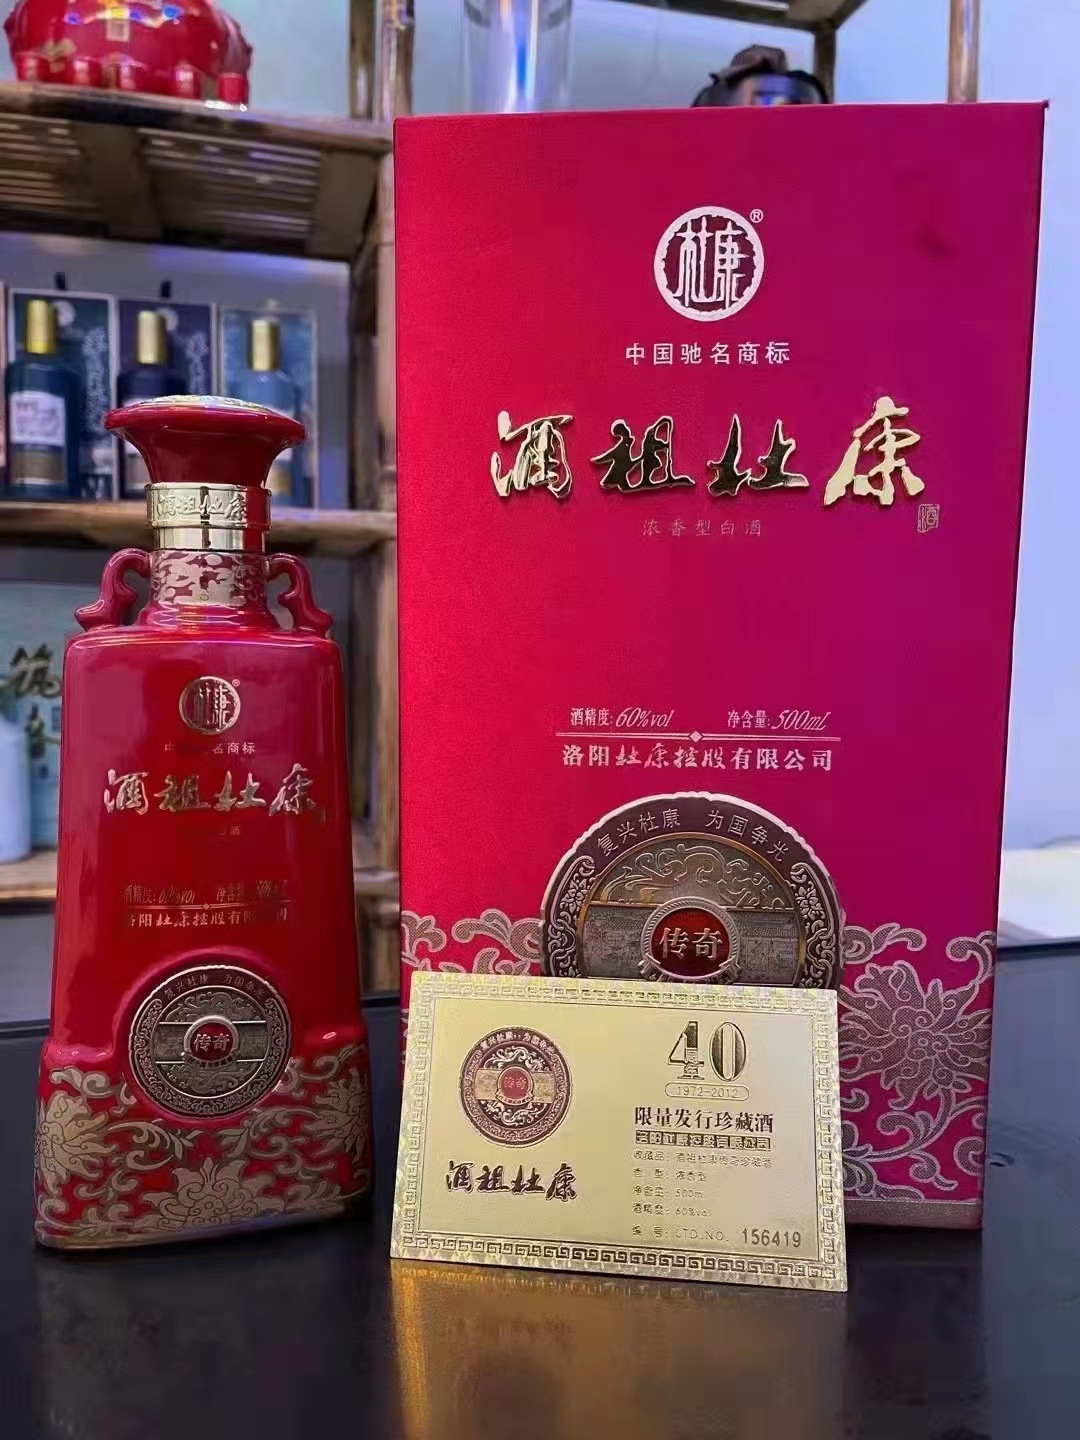 13年酒祖杜康传奇纪念建厂40周年限量发行珍藏酒纯粮老酒正品保真